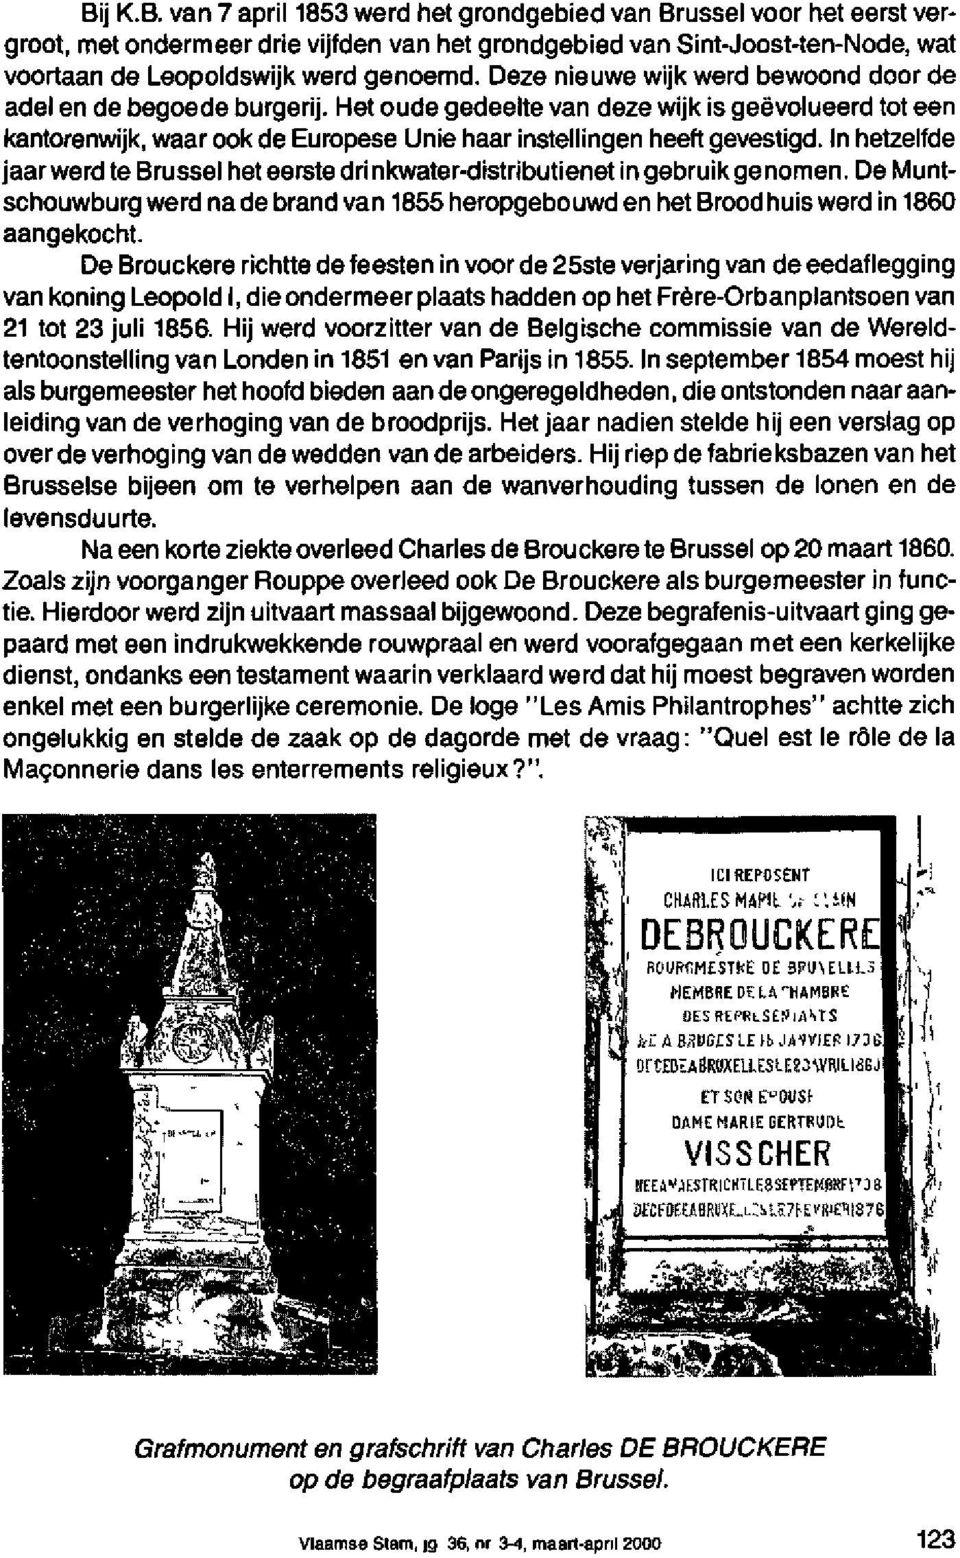 In hetzelfde jaar werd te Brussel het eerste drinkwater-distributienet in gebruik ge nomen. De Muntschouwburg werd na de brand van 1655 heropgebouwd en het Brood huis werd in 1860 aangekocht.